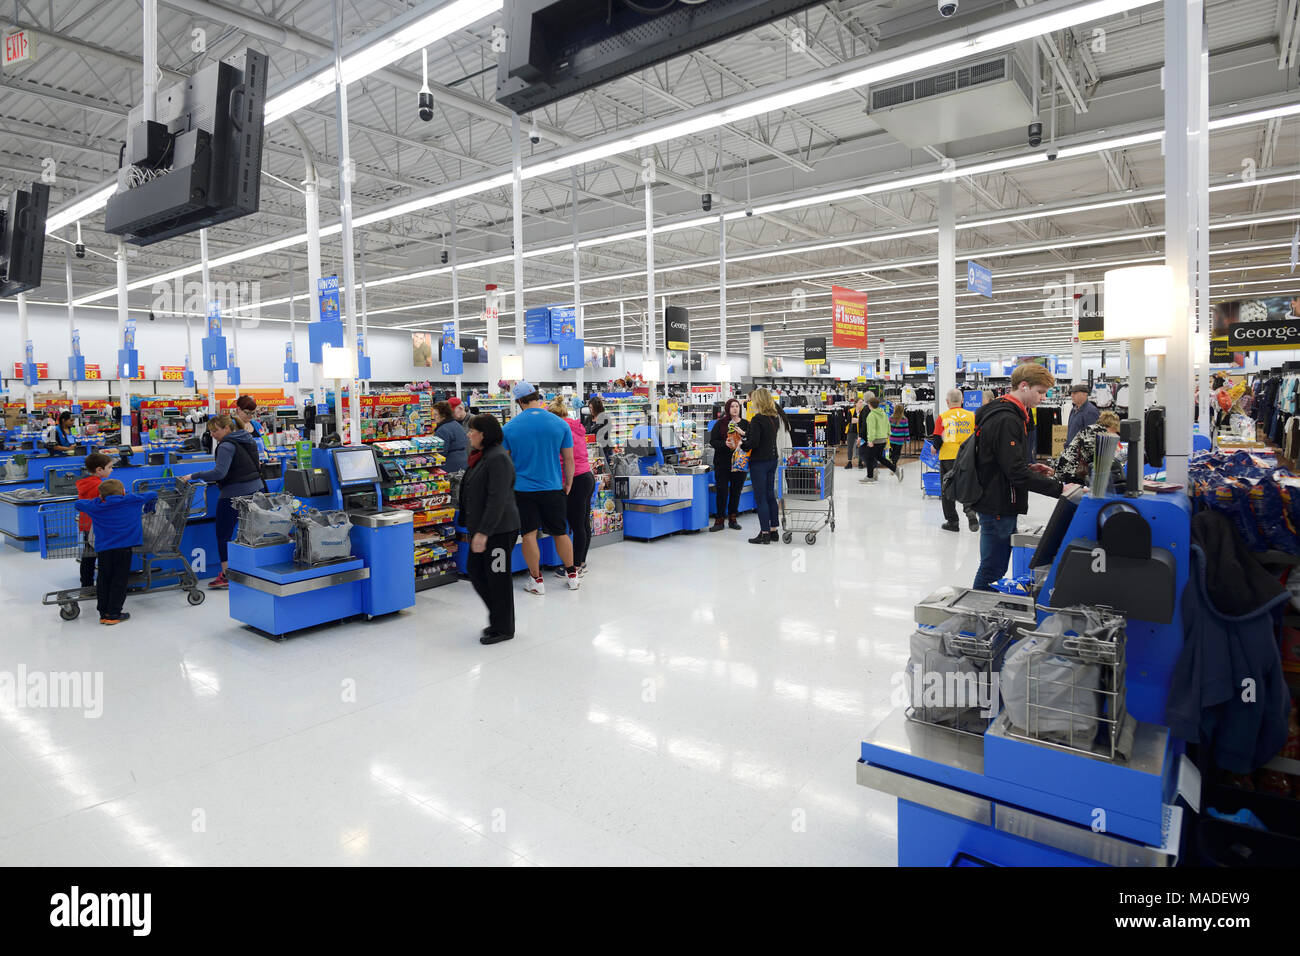 Auto-casse, checkout self-service sezione a Walmart store. La British Columbia, Canada 2017. Foto Stock